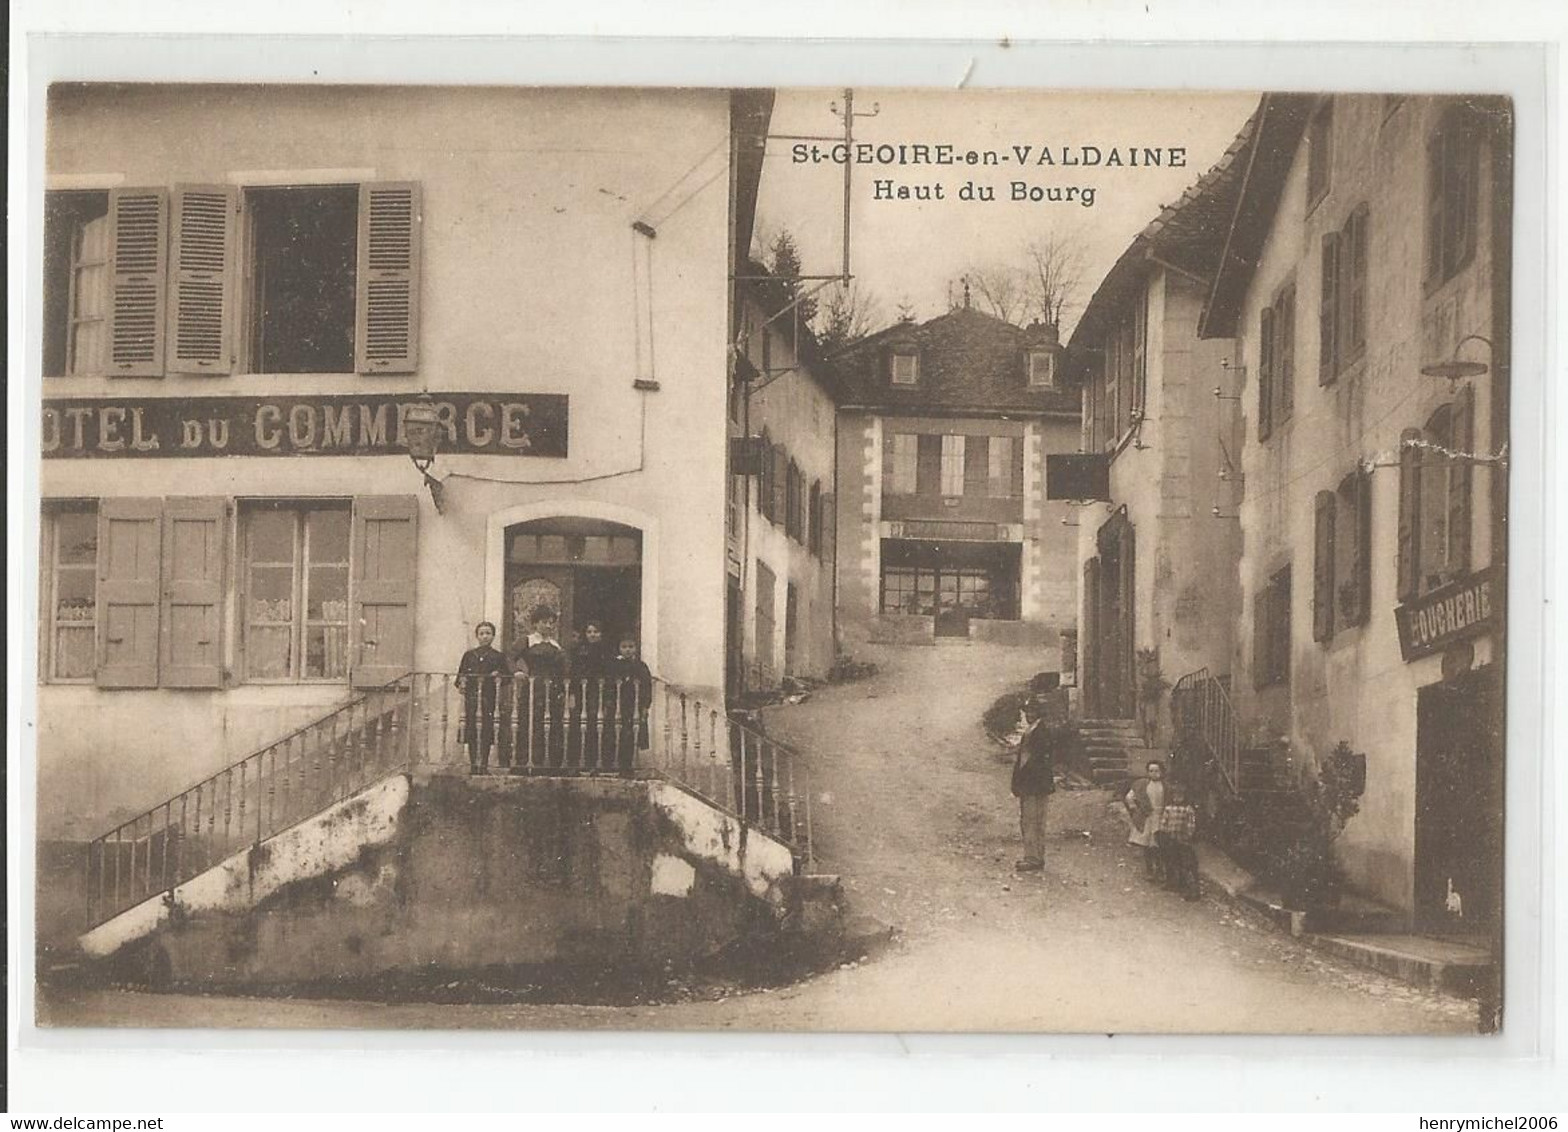 38 Isère St Geoire En Valdaine Hotel Du Commerce Boucherie Haut Du Bourg Cachet Chamonix 1930 - Saint-Geoire-en-Valdaine